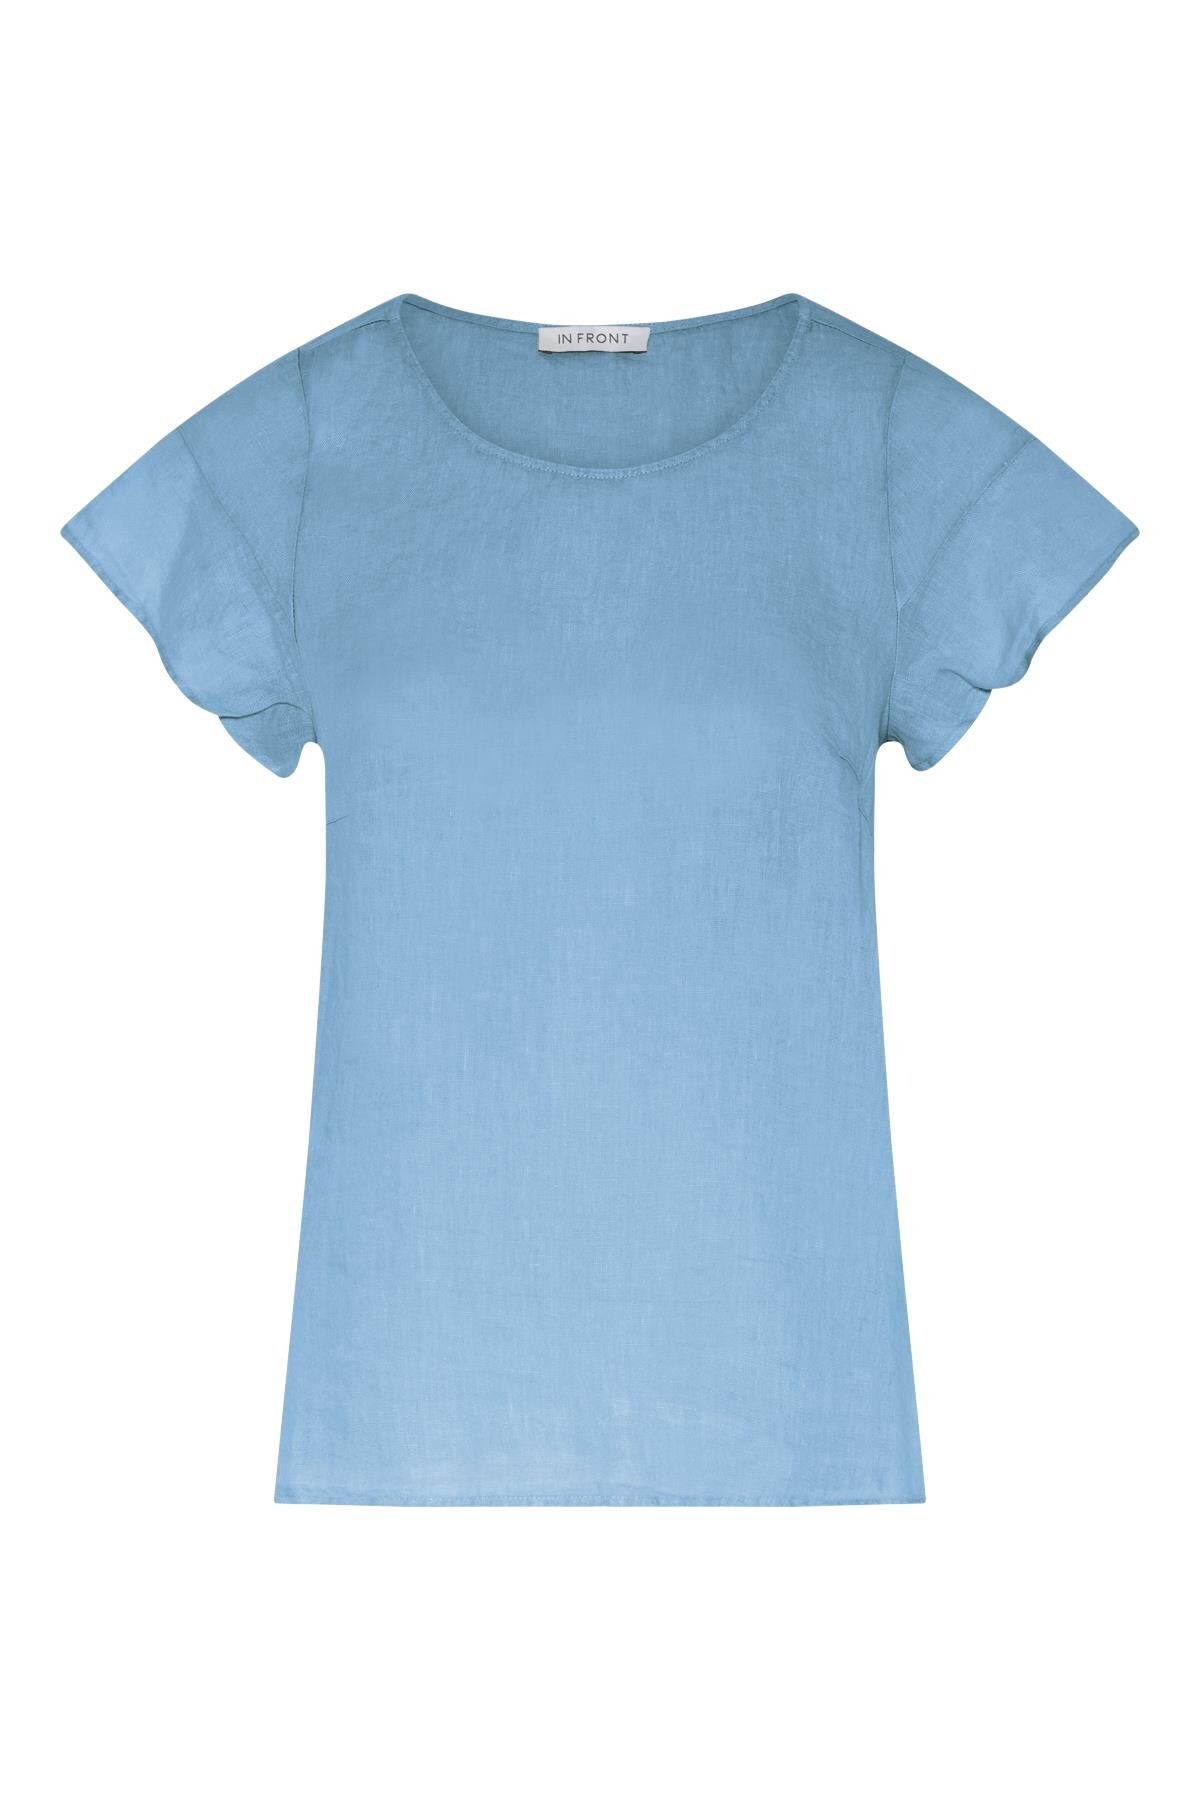 Se IN FRONT Lino Bluse, Farve: Light Blue, Størrelse: M, Dame hos Infront Women